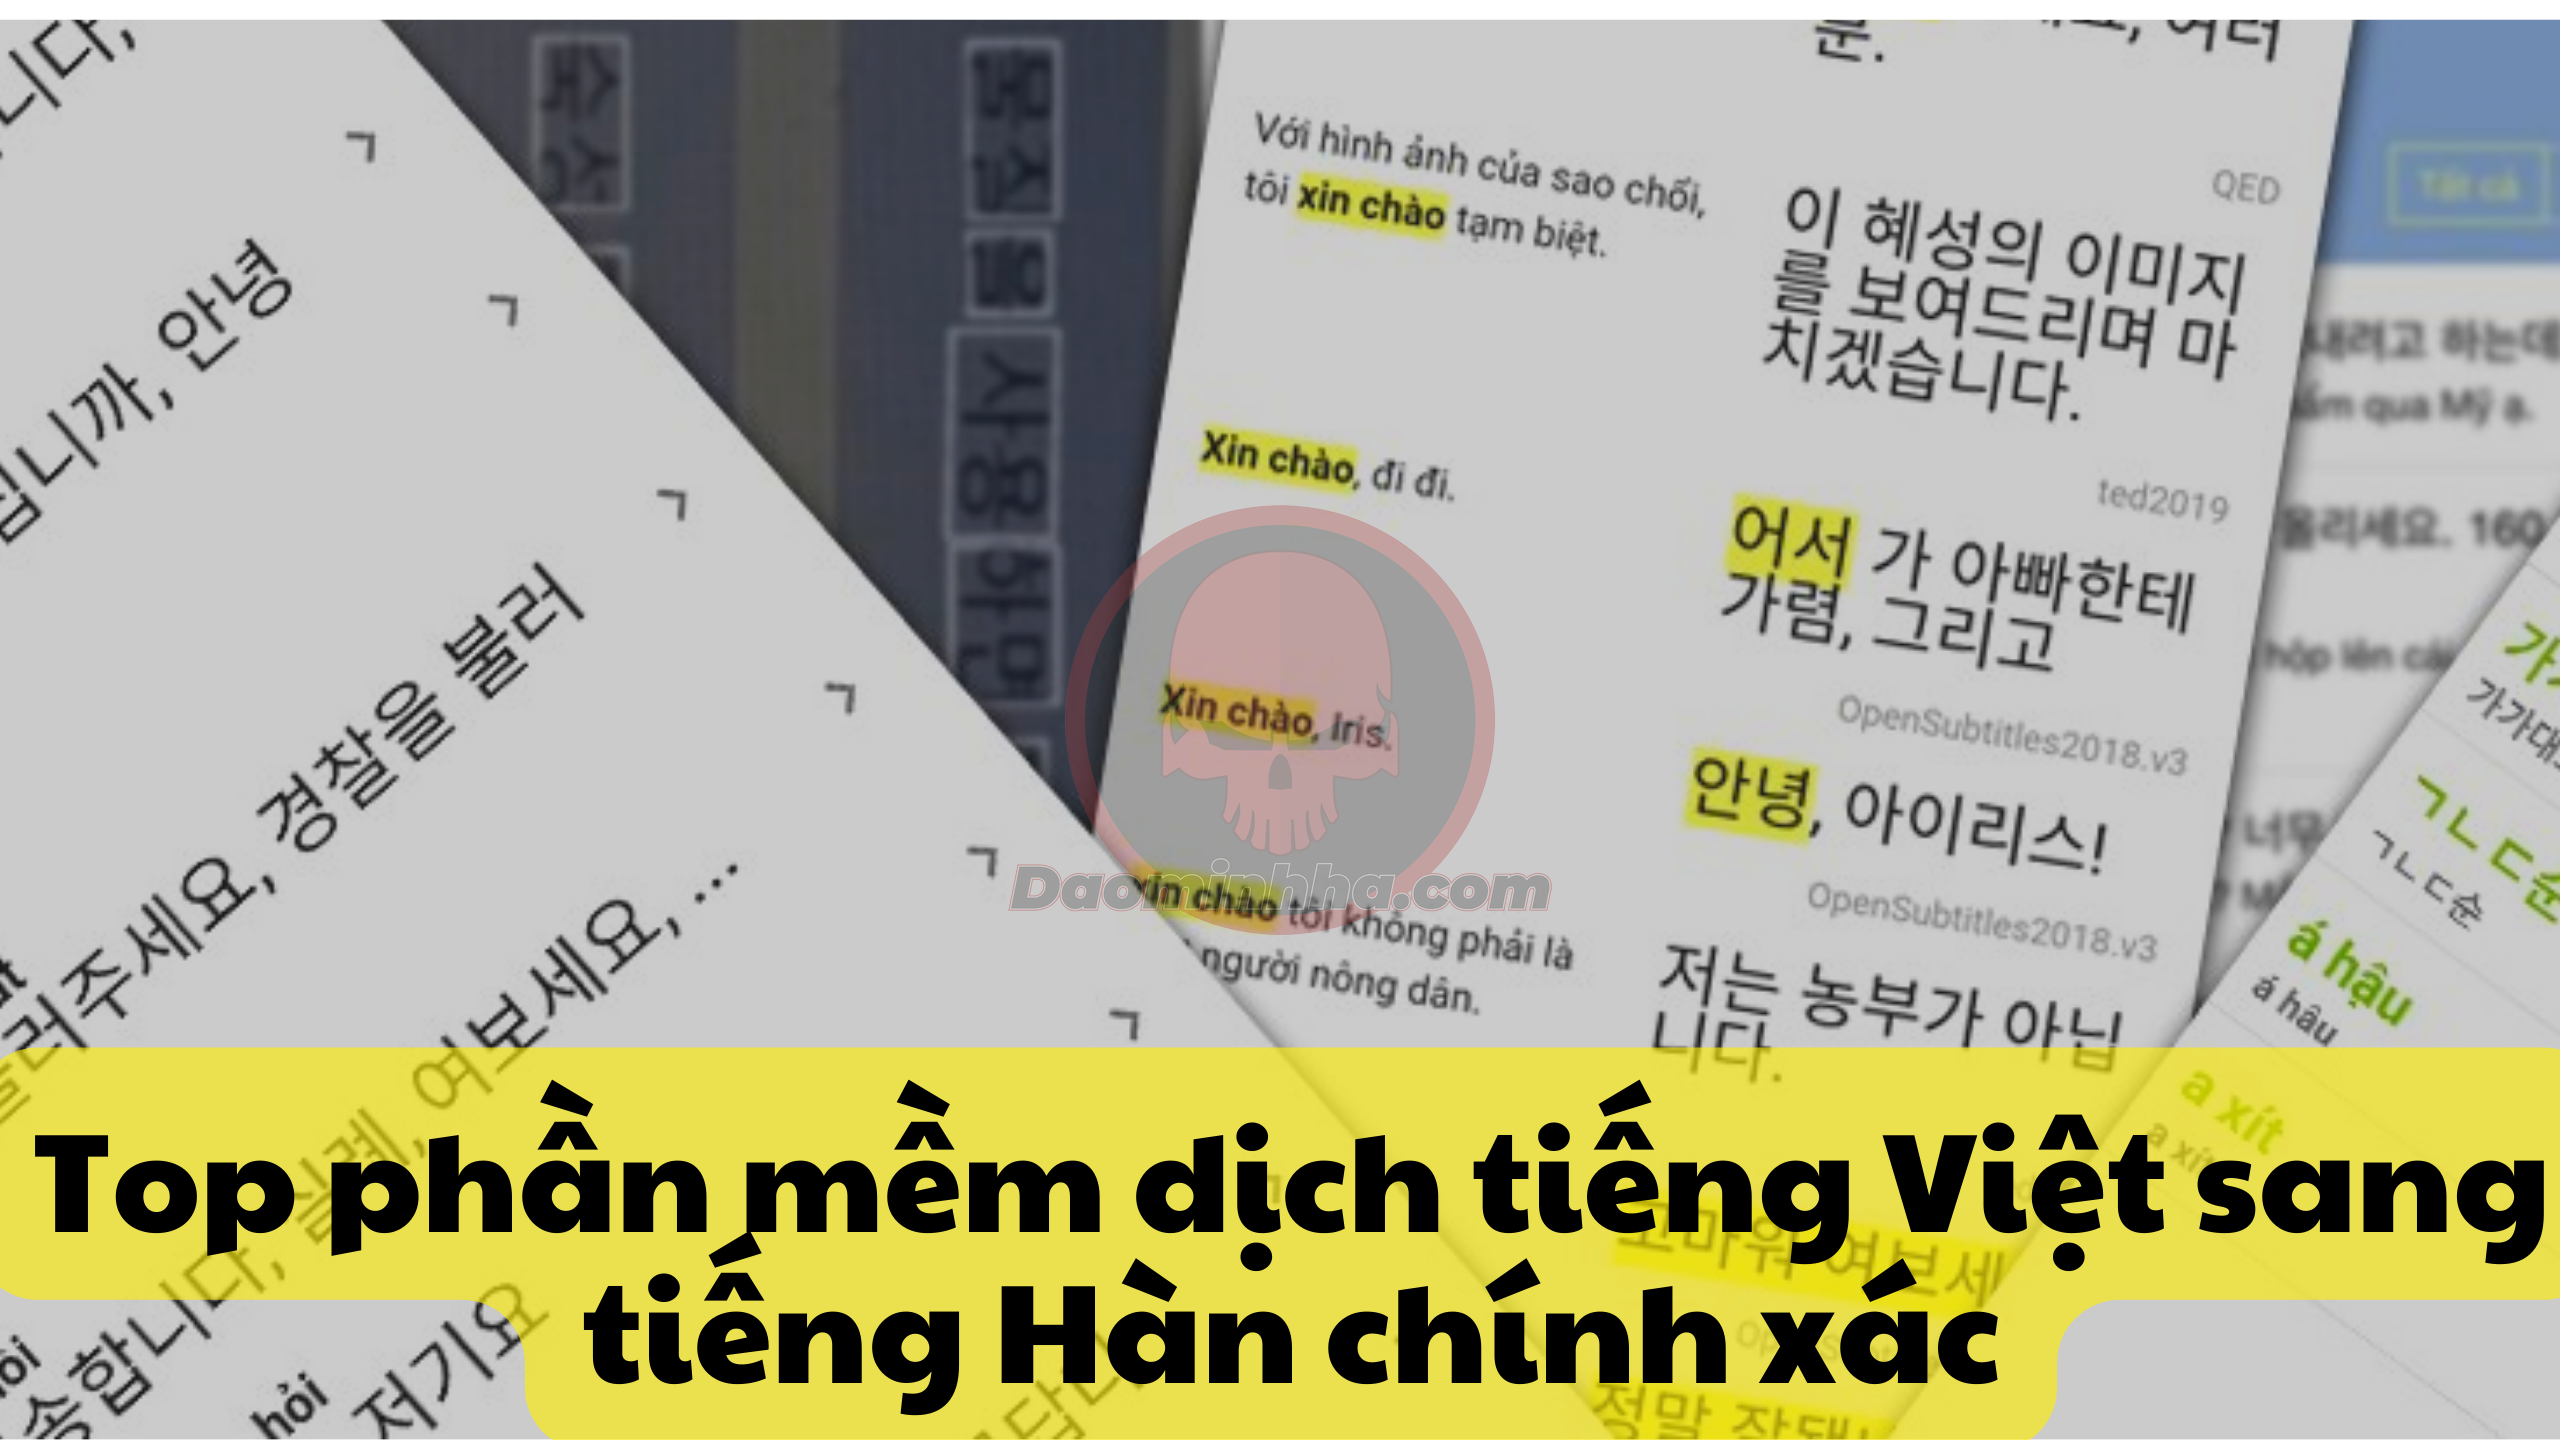 Top phần mềm dịch tiếng Việt sang tiếng Hàn chính xác